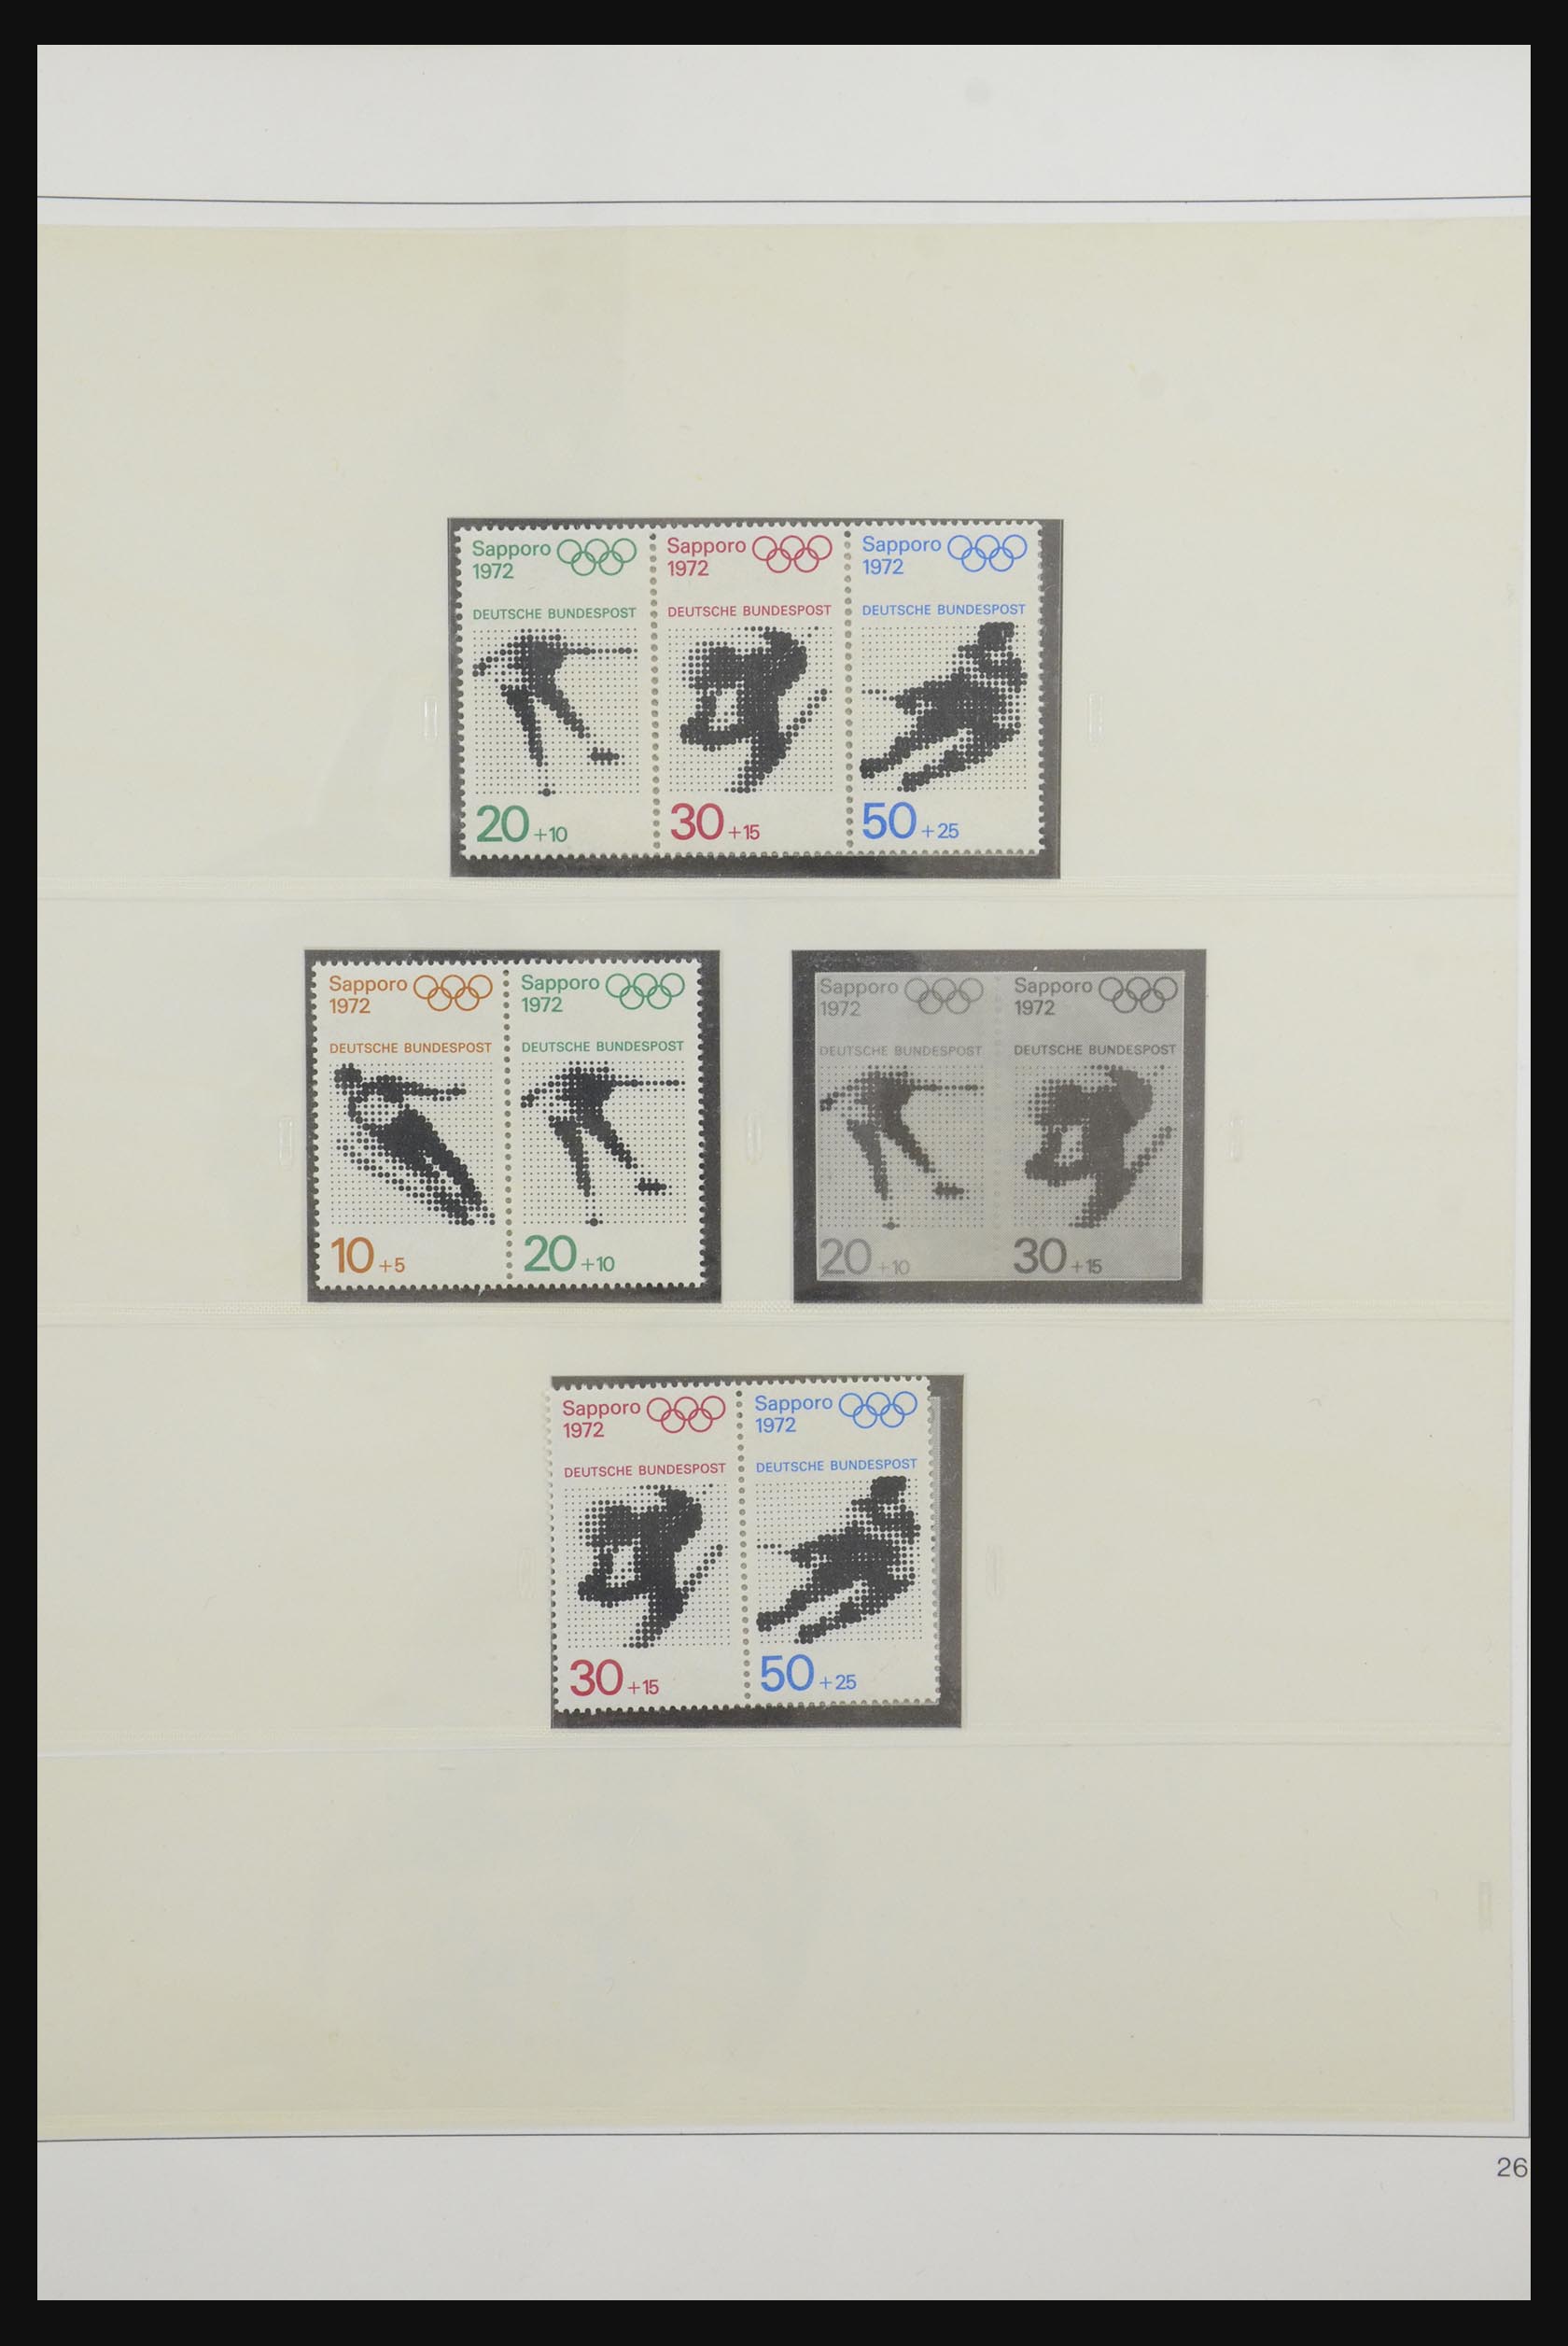 31842 036 - 31842 Bundespost combinations 1951-2003.